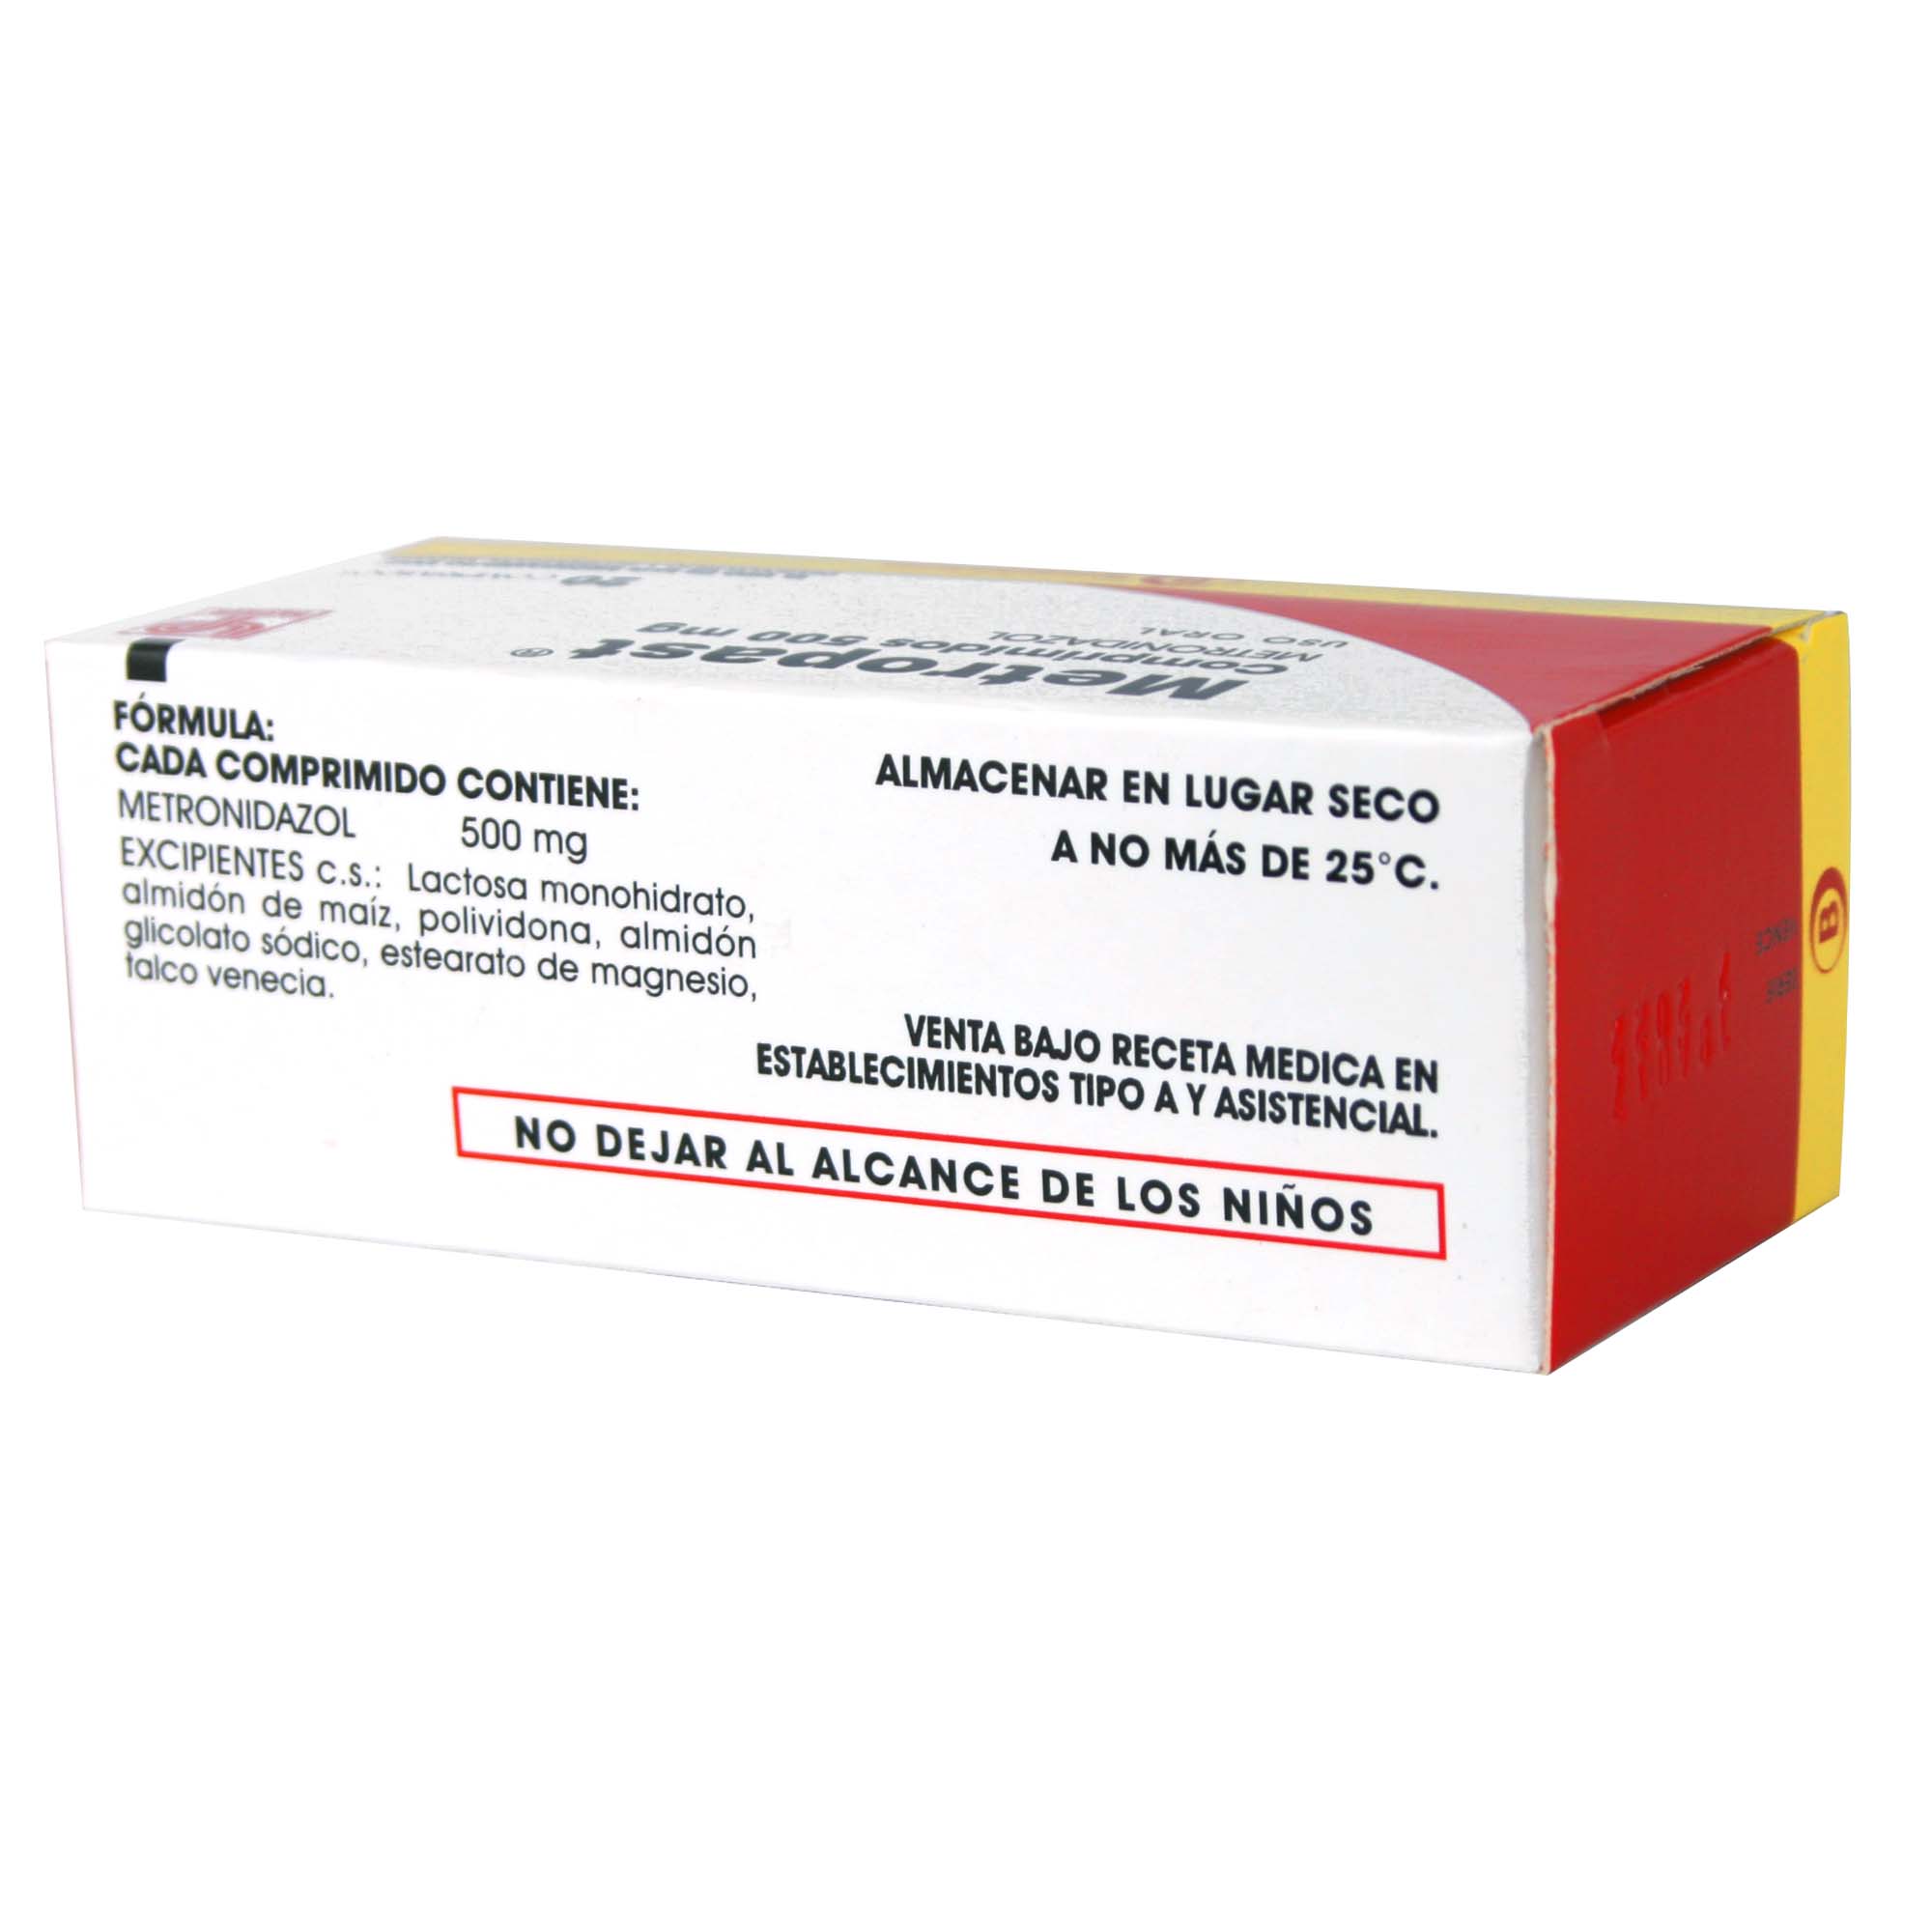 Metropast Metronidazol 500 mg 20 Comprimidos | Farmacias Cruz Verde